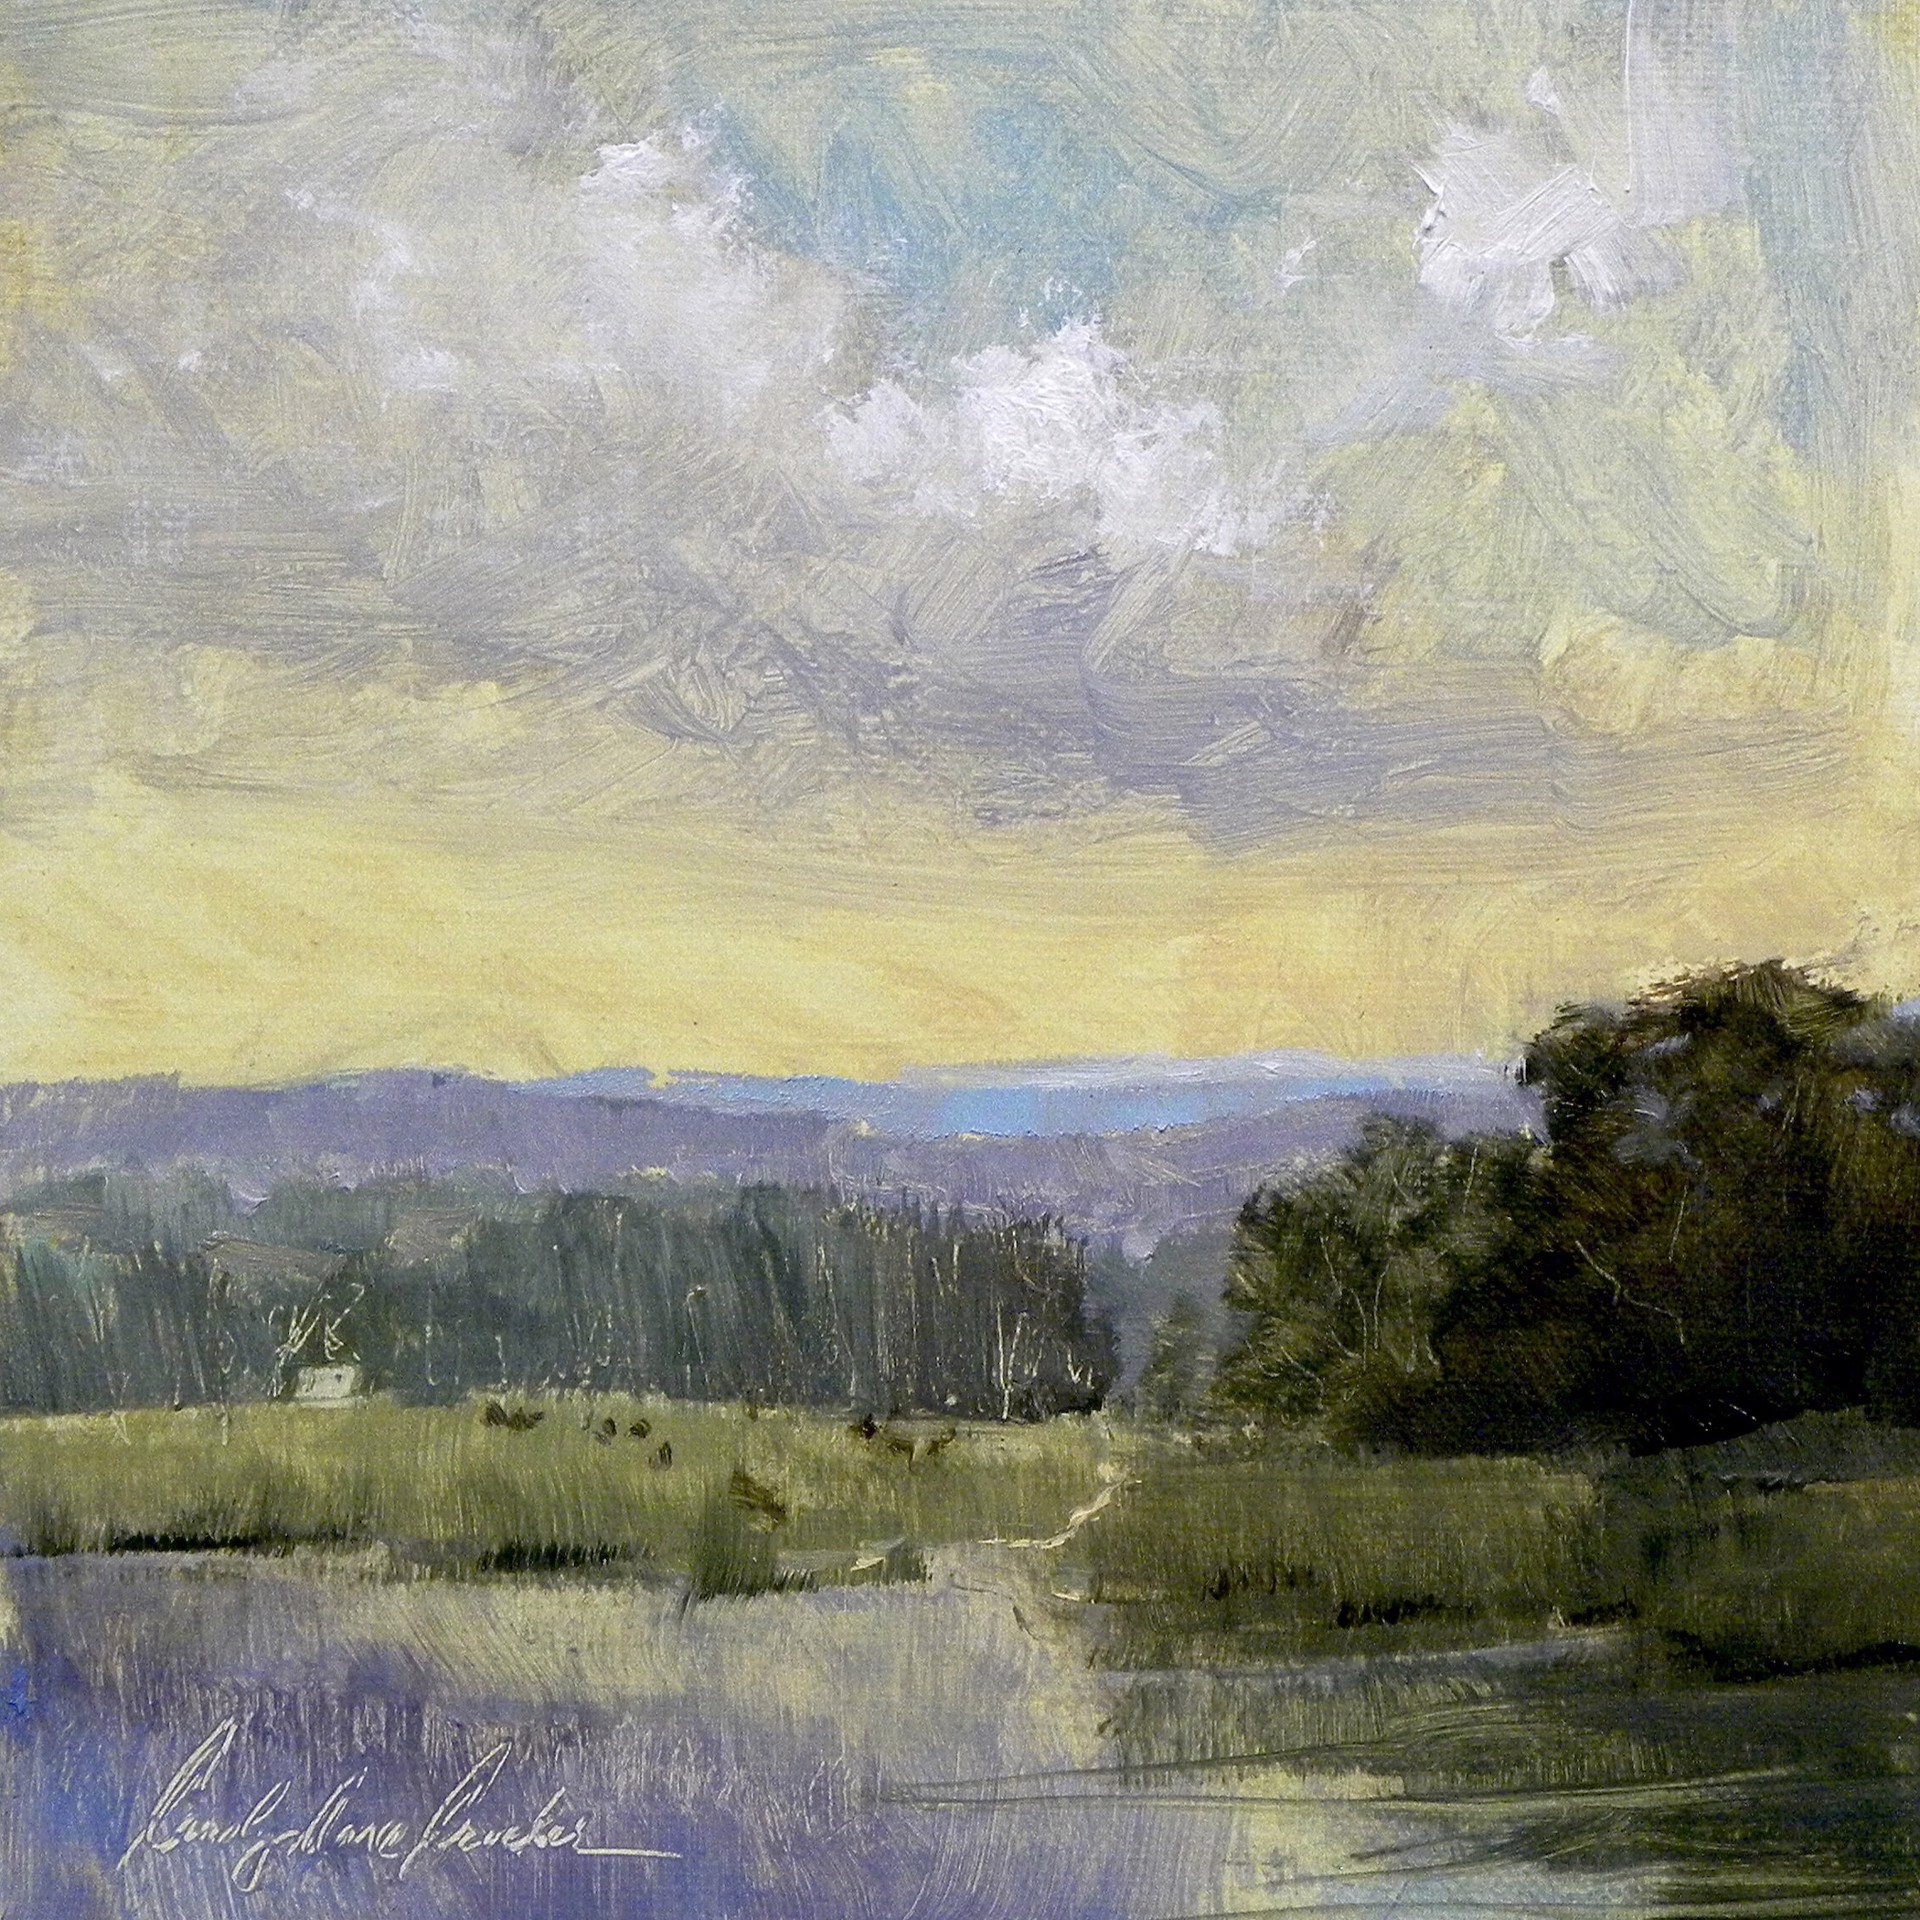 Appalachian Sky by Carolyn Anne Crocker